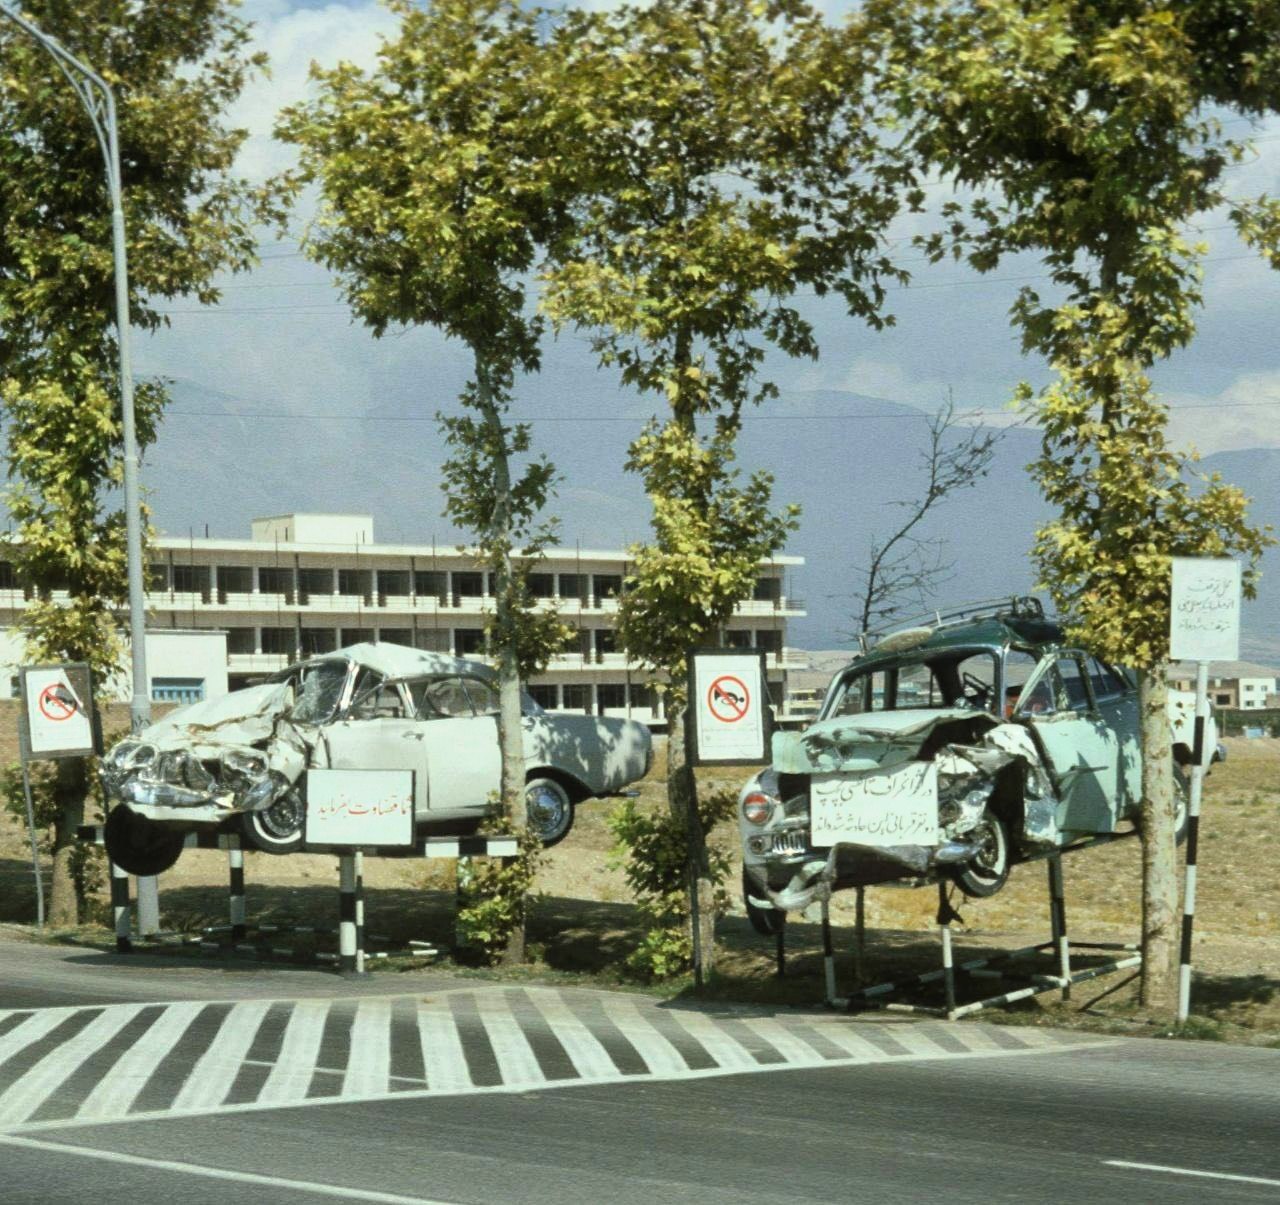 ‏نمایش خودروهای تصادفی جهت عبرت در تهران! + عکس